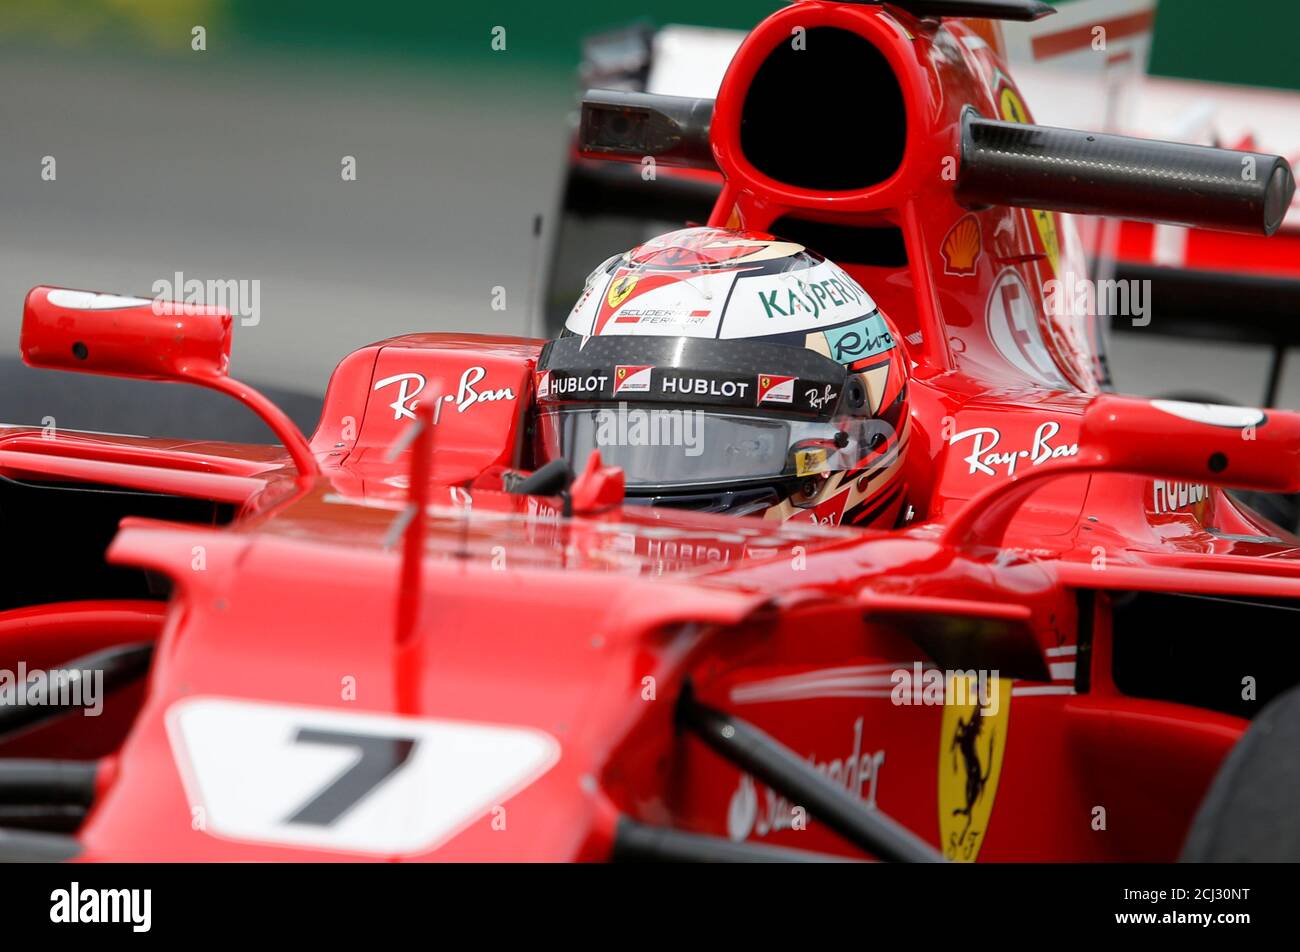 Formel 1 - F1 - großer Preis von Kanada - Montreal, Quebec, Kanada - 09/06/2017 - Ferrari Kimi Räikkönen in Aktion während der ersten freien Trainingseinheit. REUTERS/Chris Wattie Stockfoto